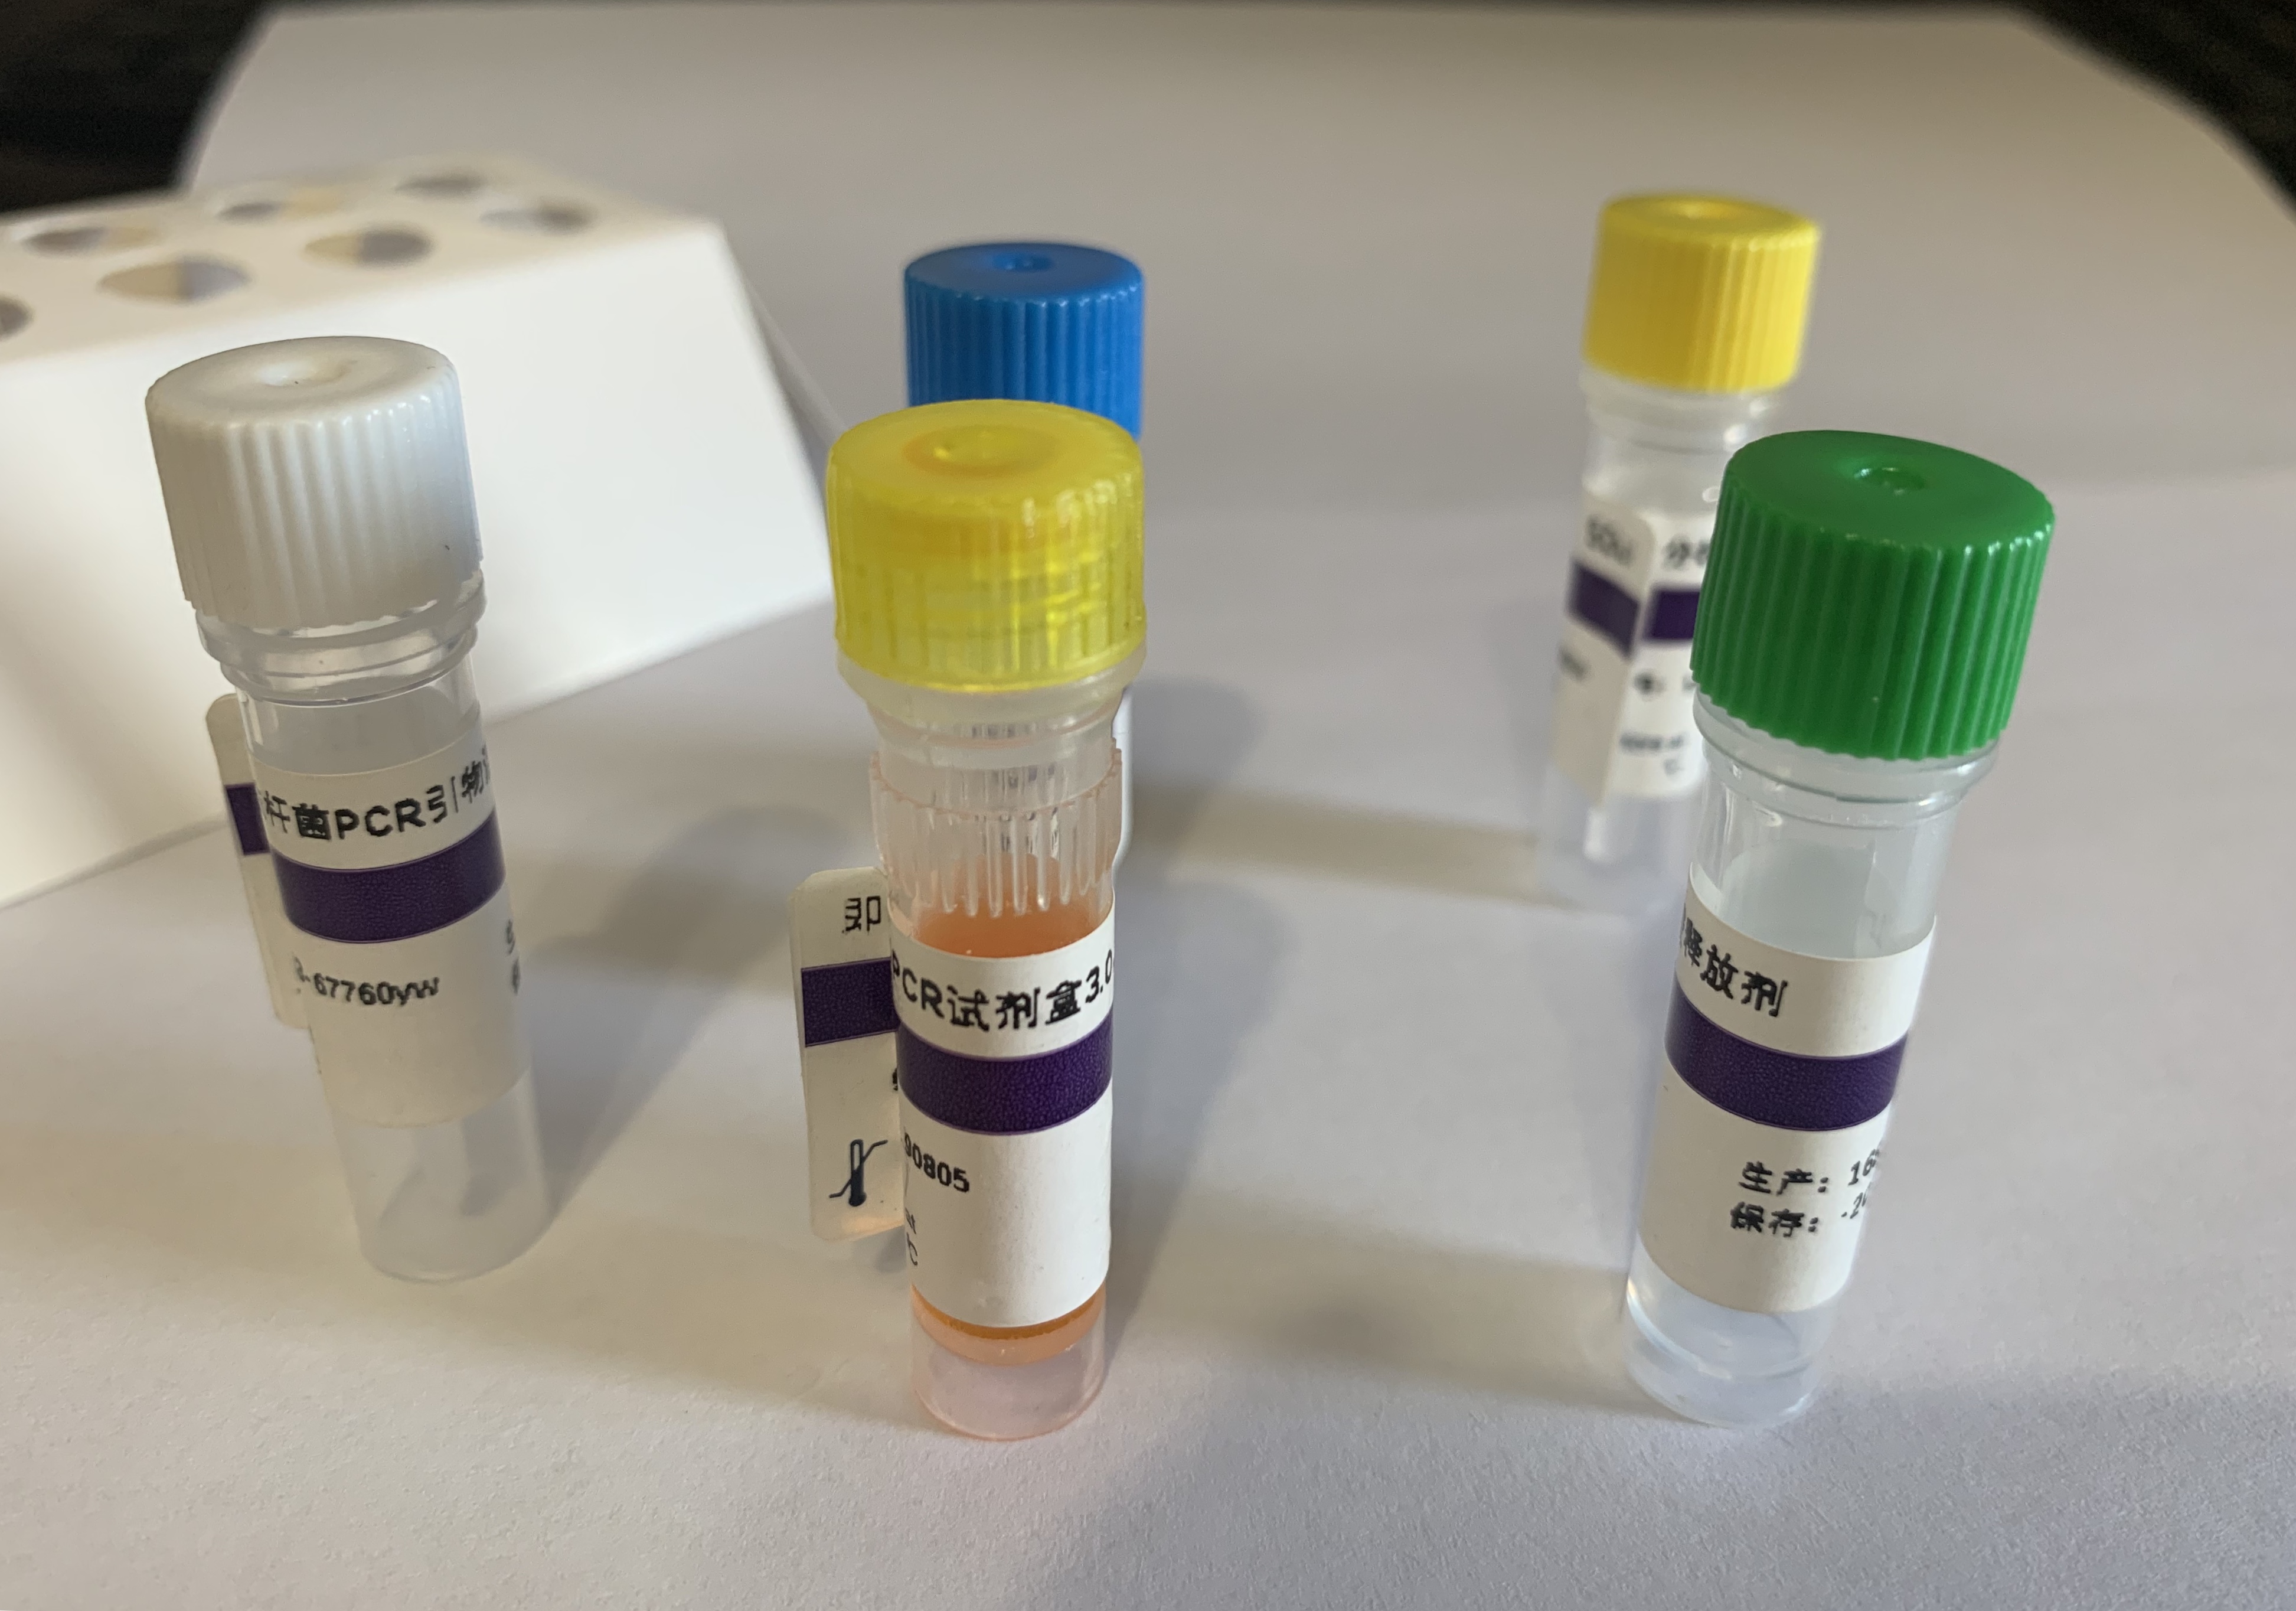 传染性软疣病毒PCR试剂盒